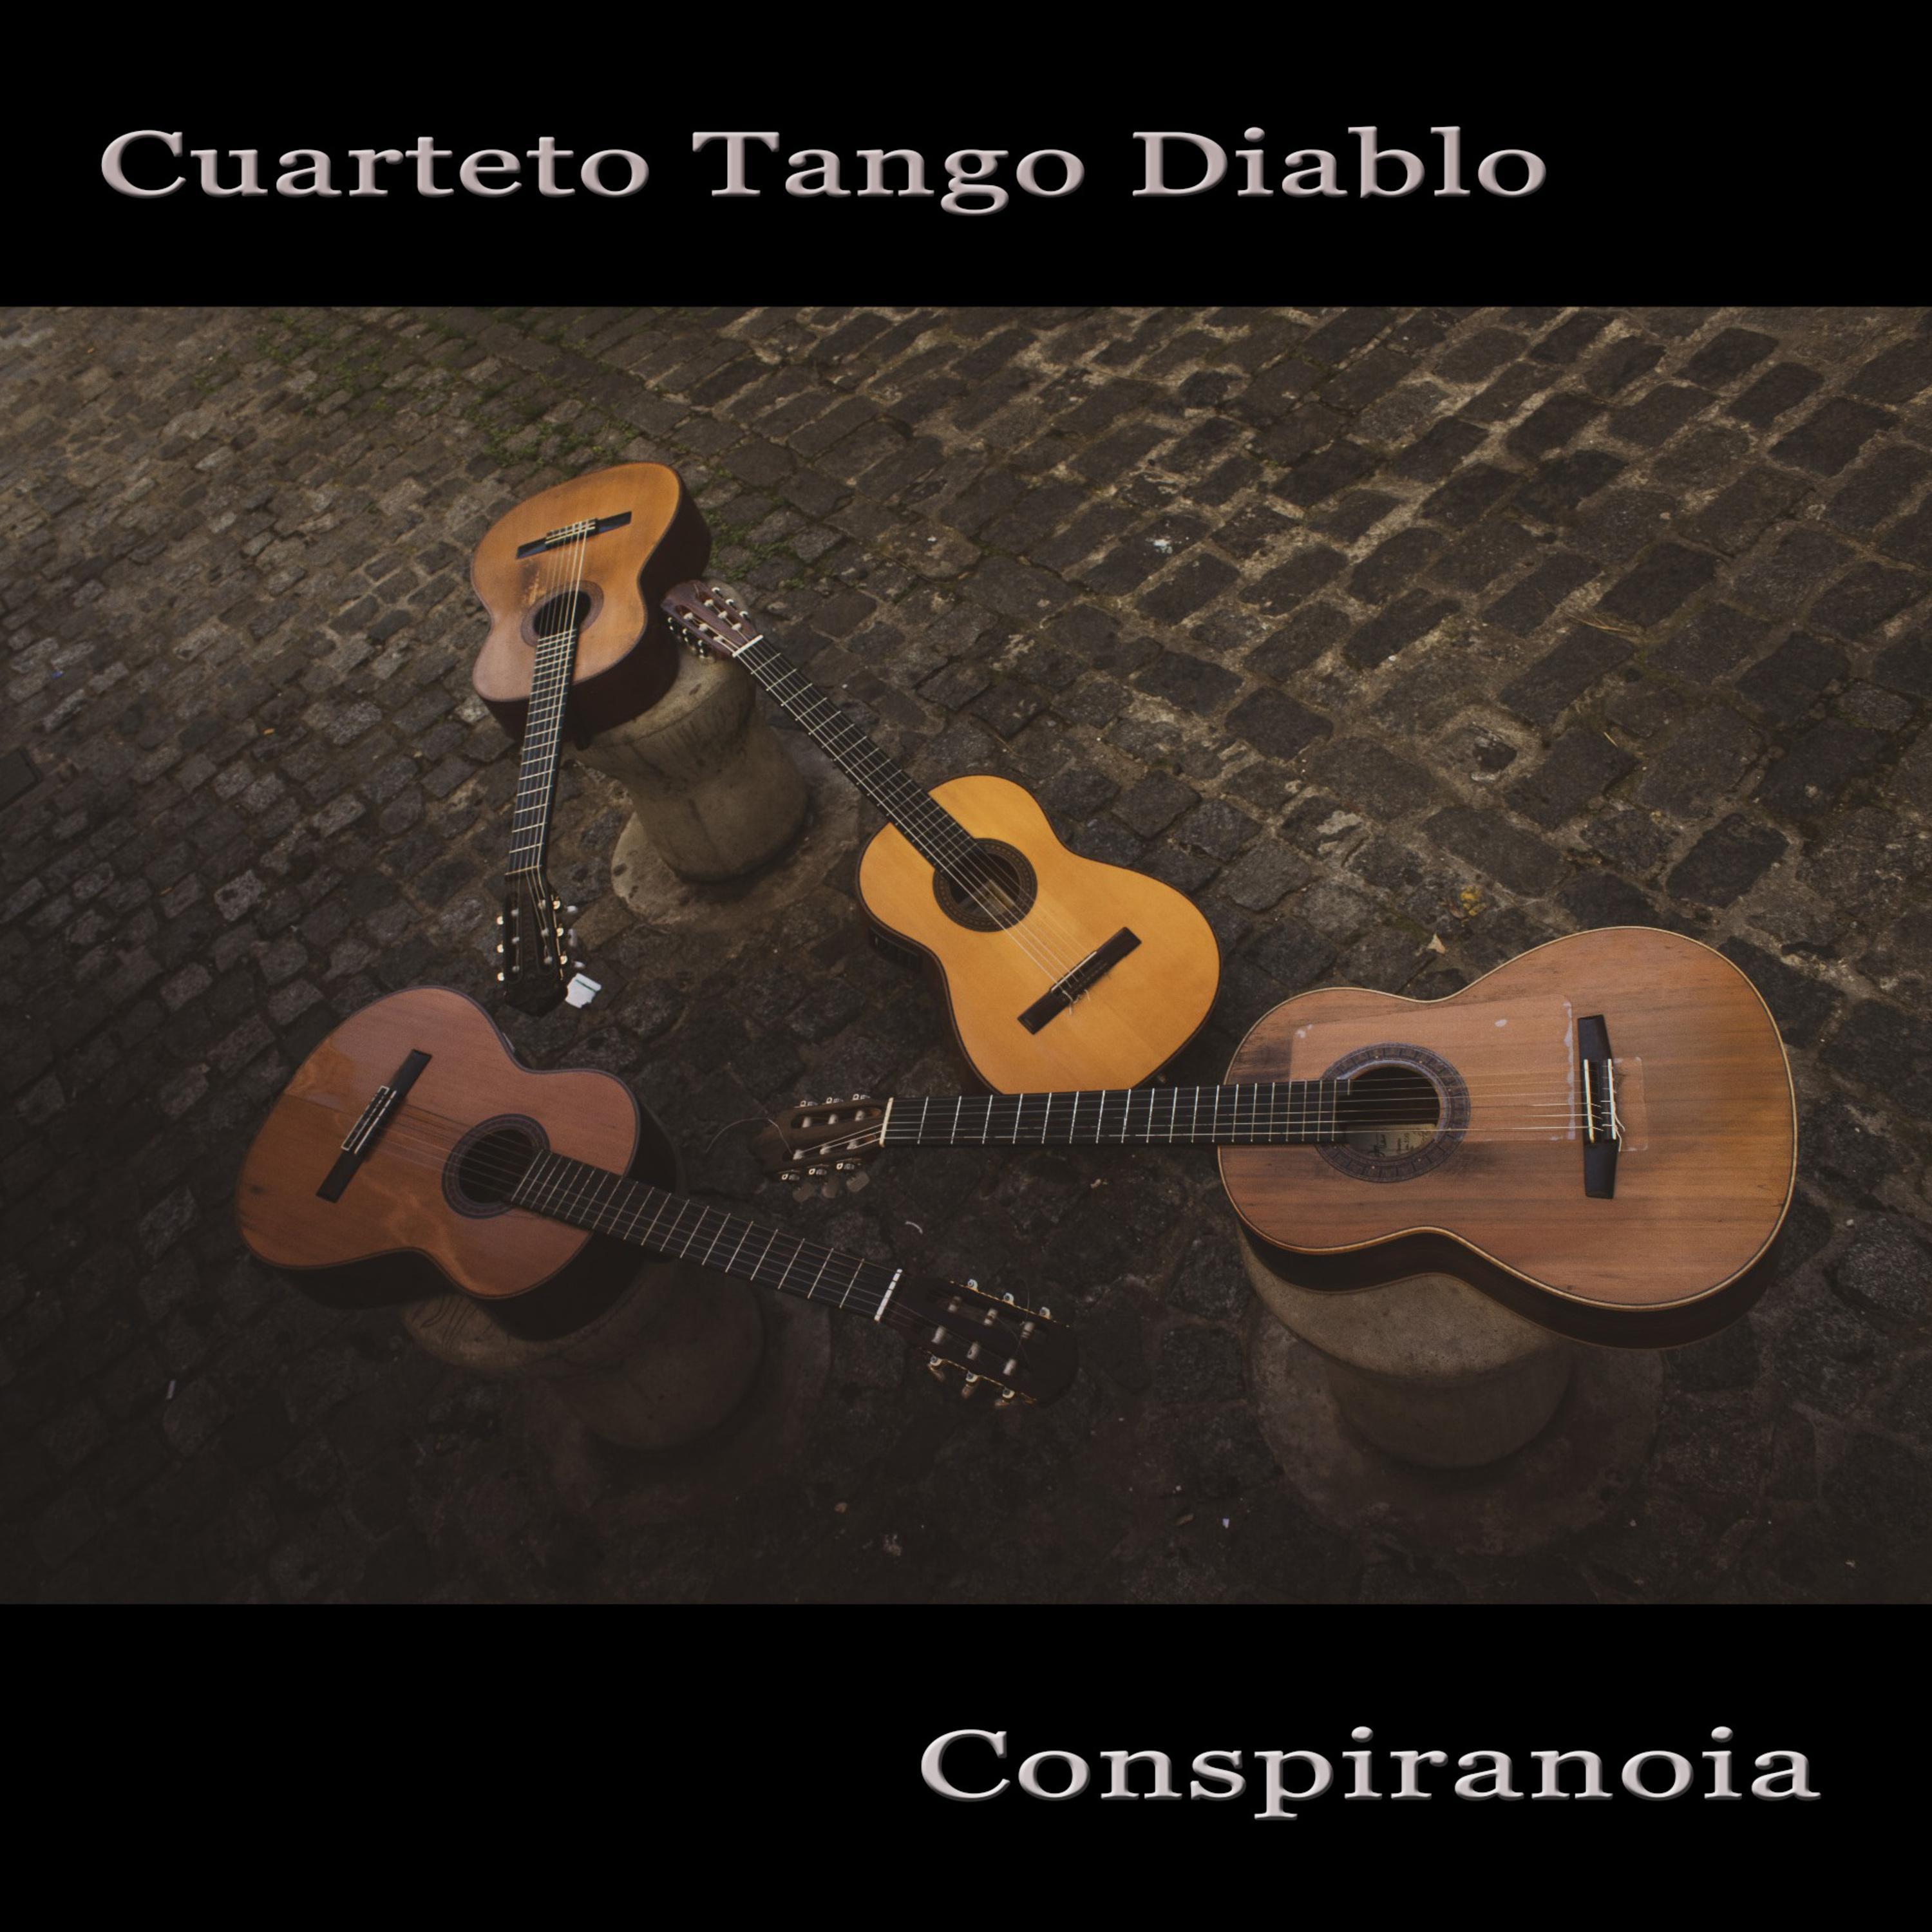 Cuarteto Tango Diablo - Conspiranoia